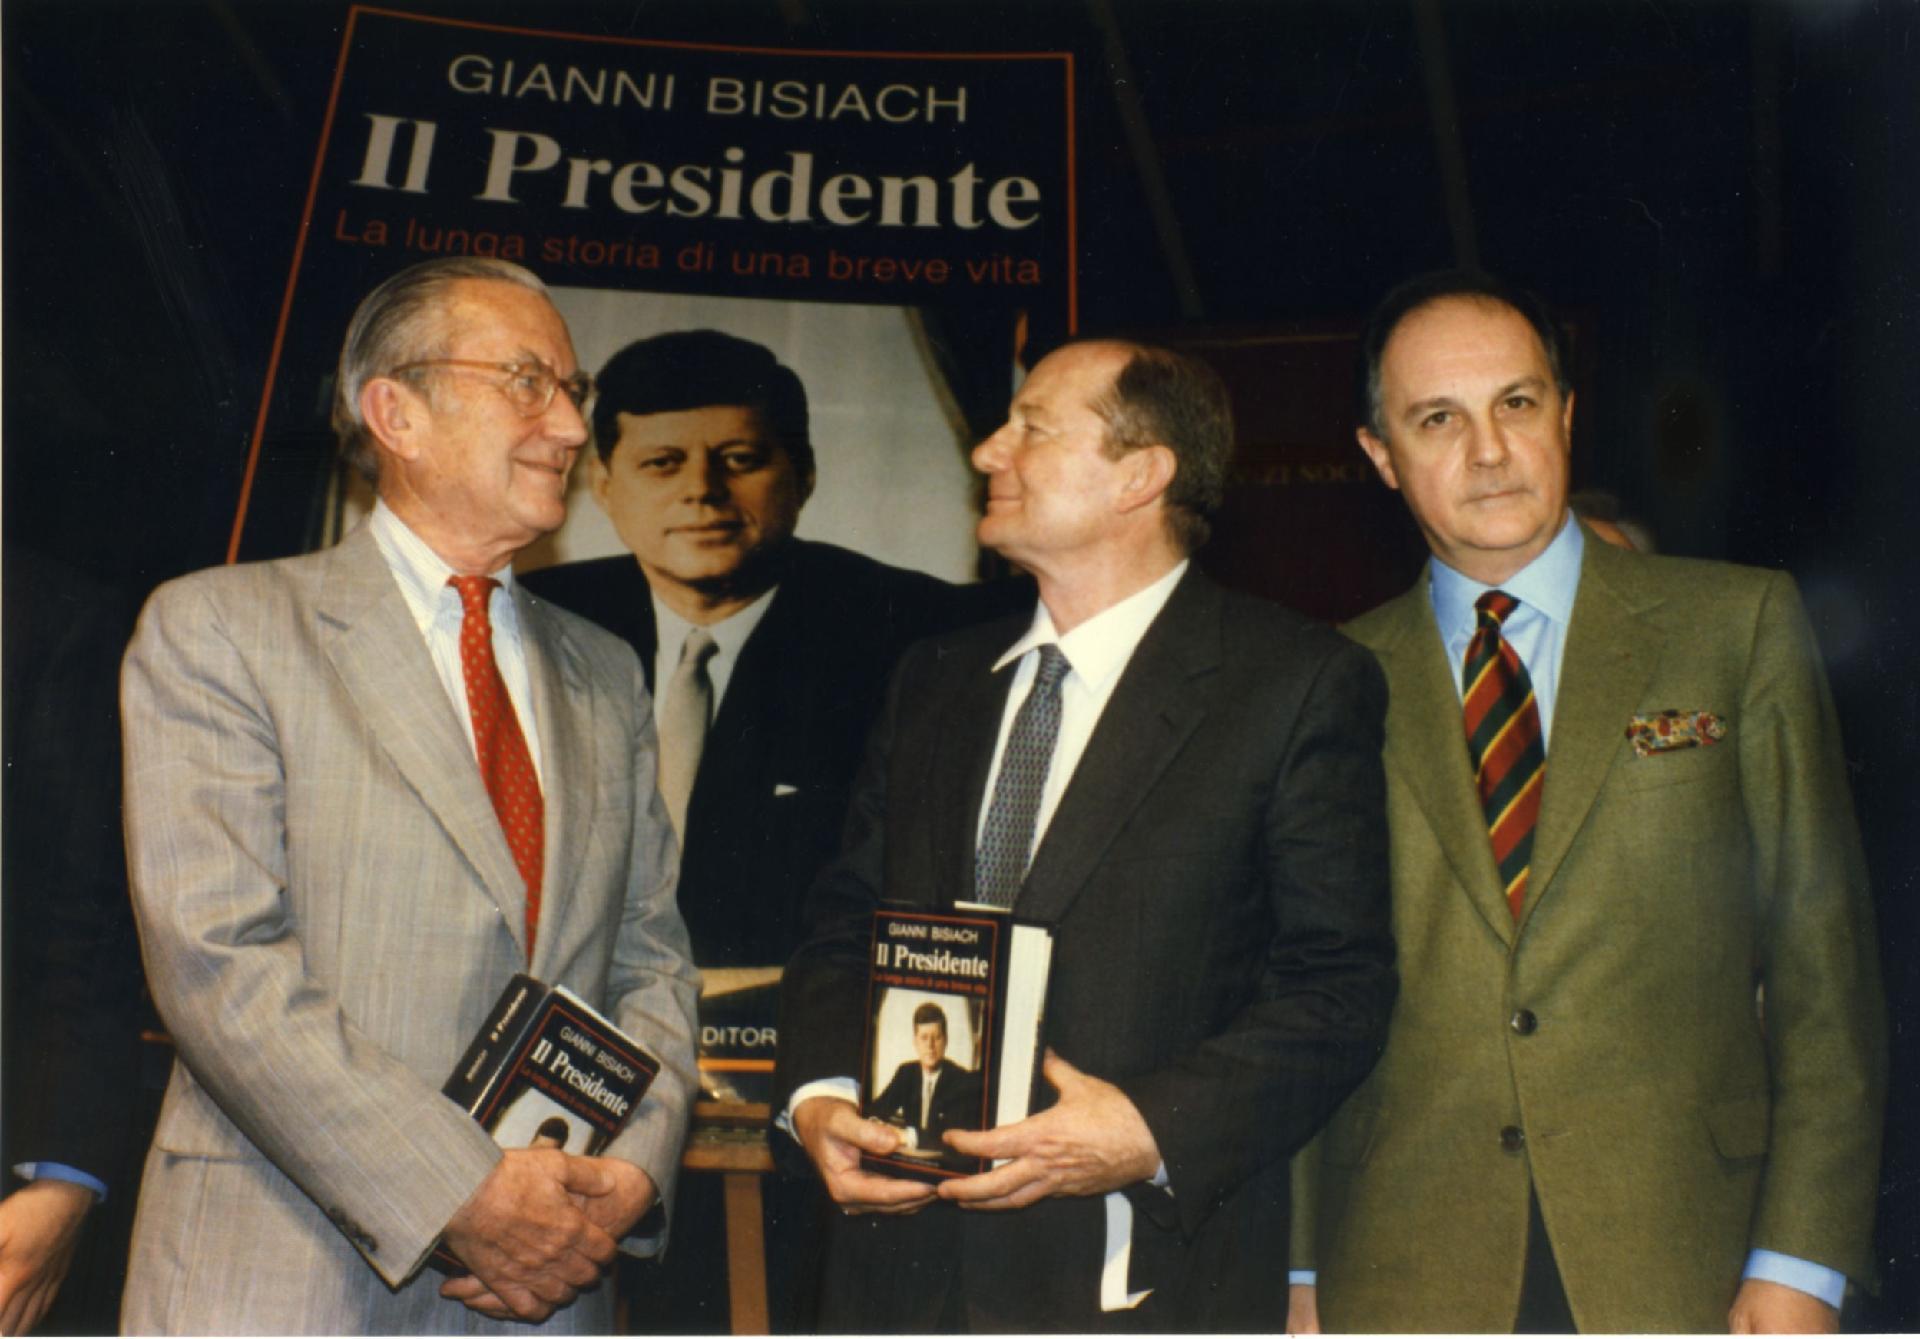 Gianni Bisiach con William Colby e Vittorio Avanzini alla presentazione del libro &quot;Il Presidente&quot; al Teatro Tenda e Strisce di Roma il 2 novembre 1990